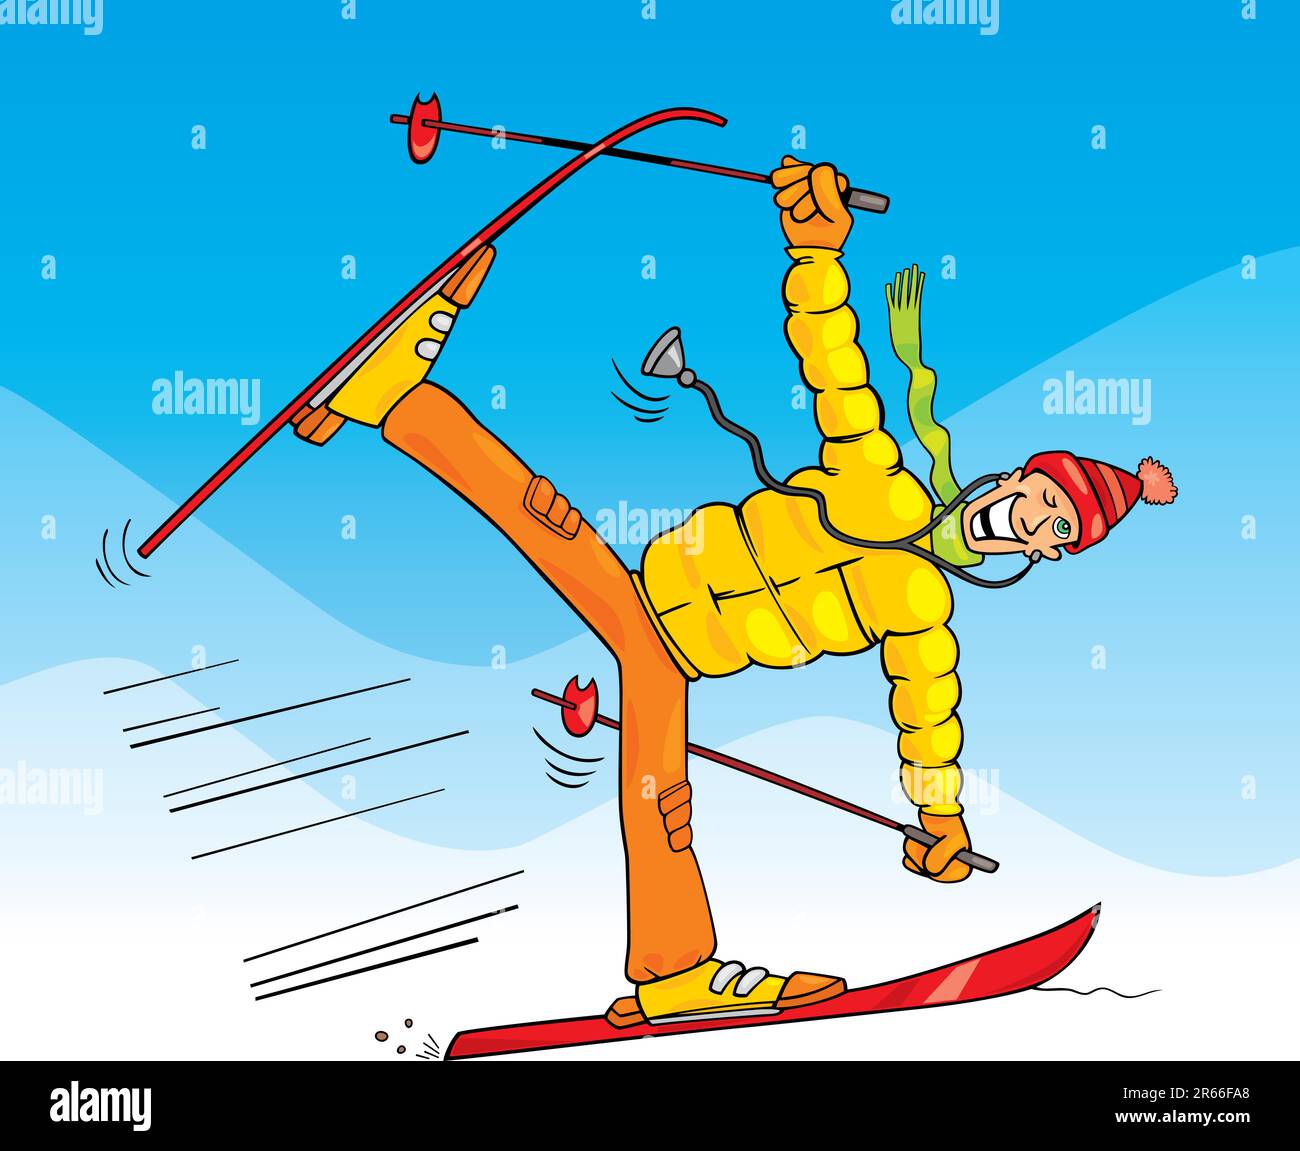 Illustration humoristique de crazy médecin on ski Illustration de Vecteur